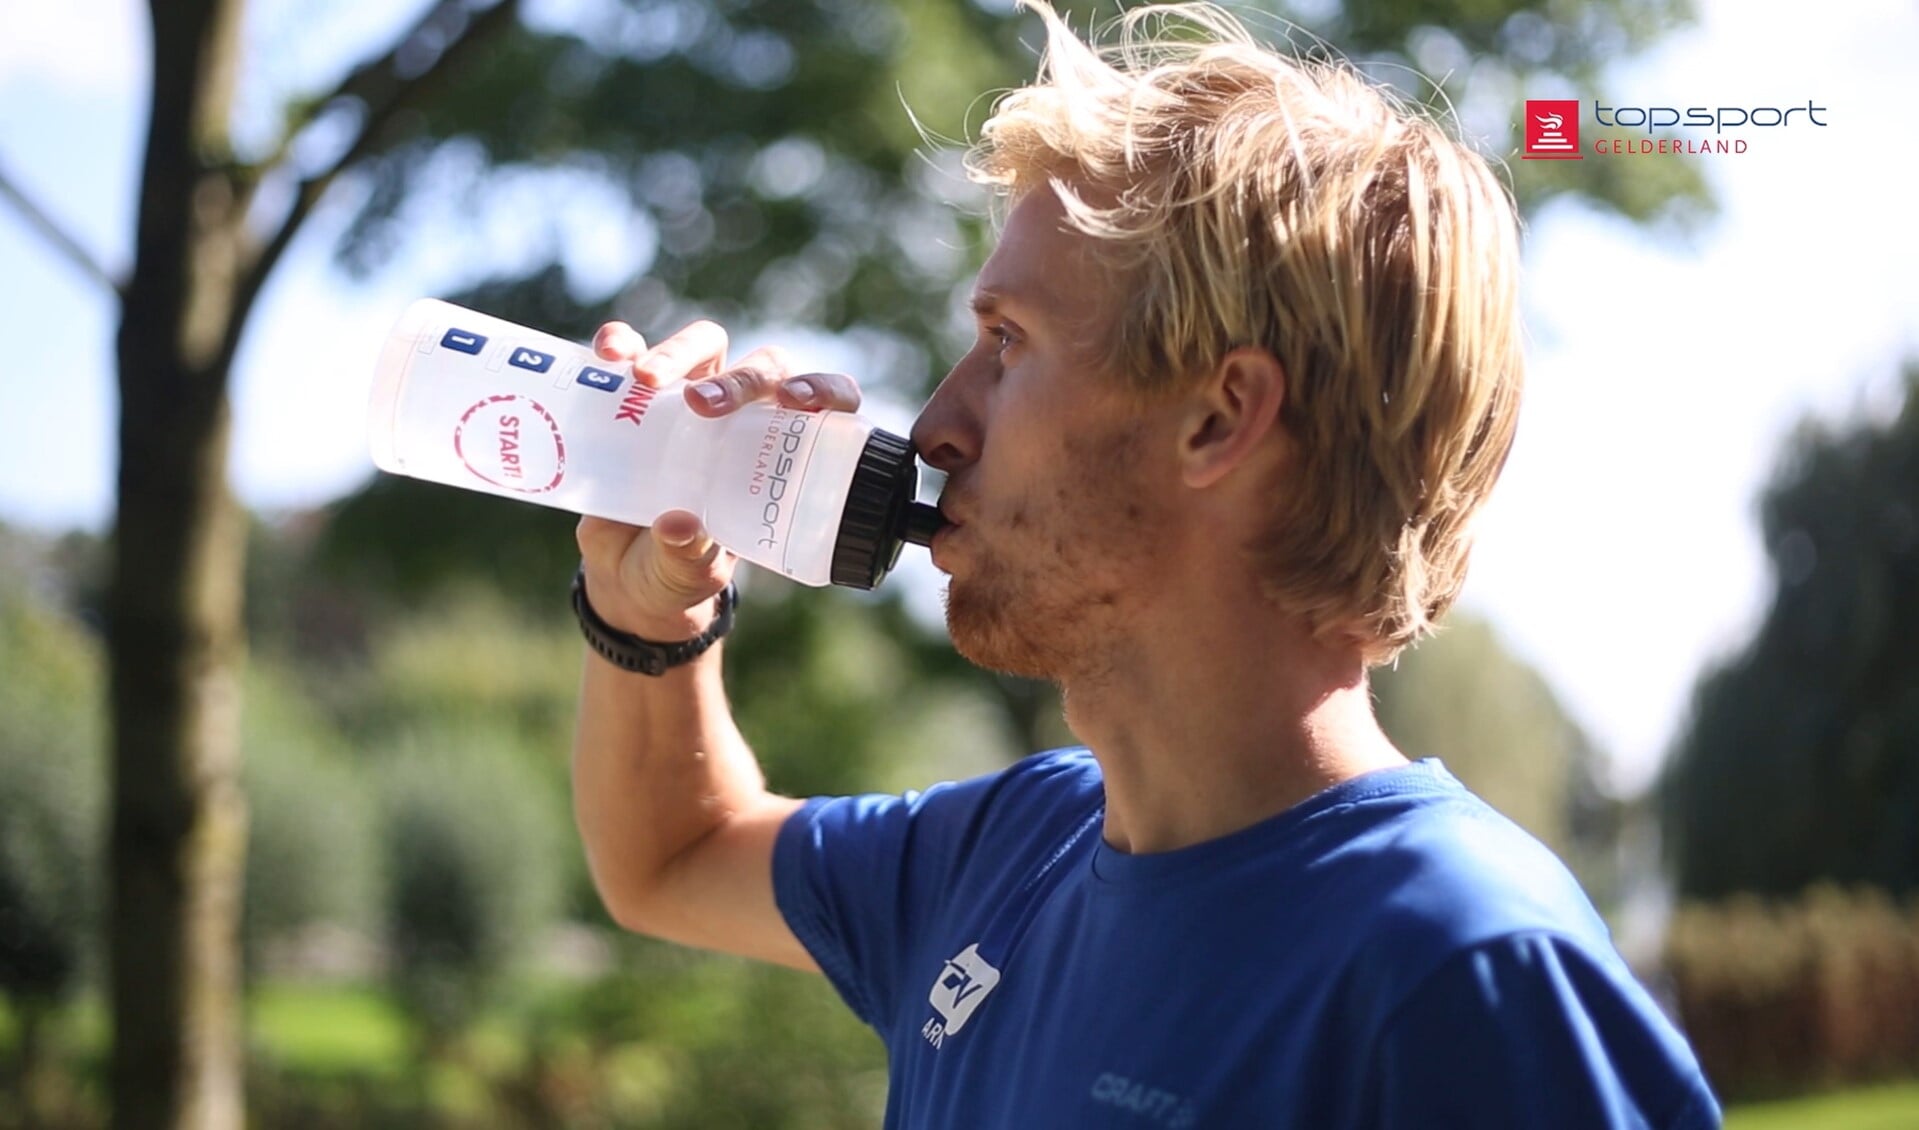 marathonloper Frank Futselaar werkt mee aan de campagne.